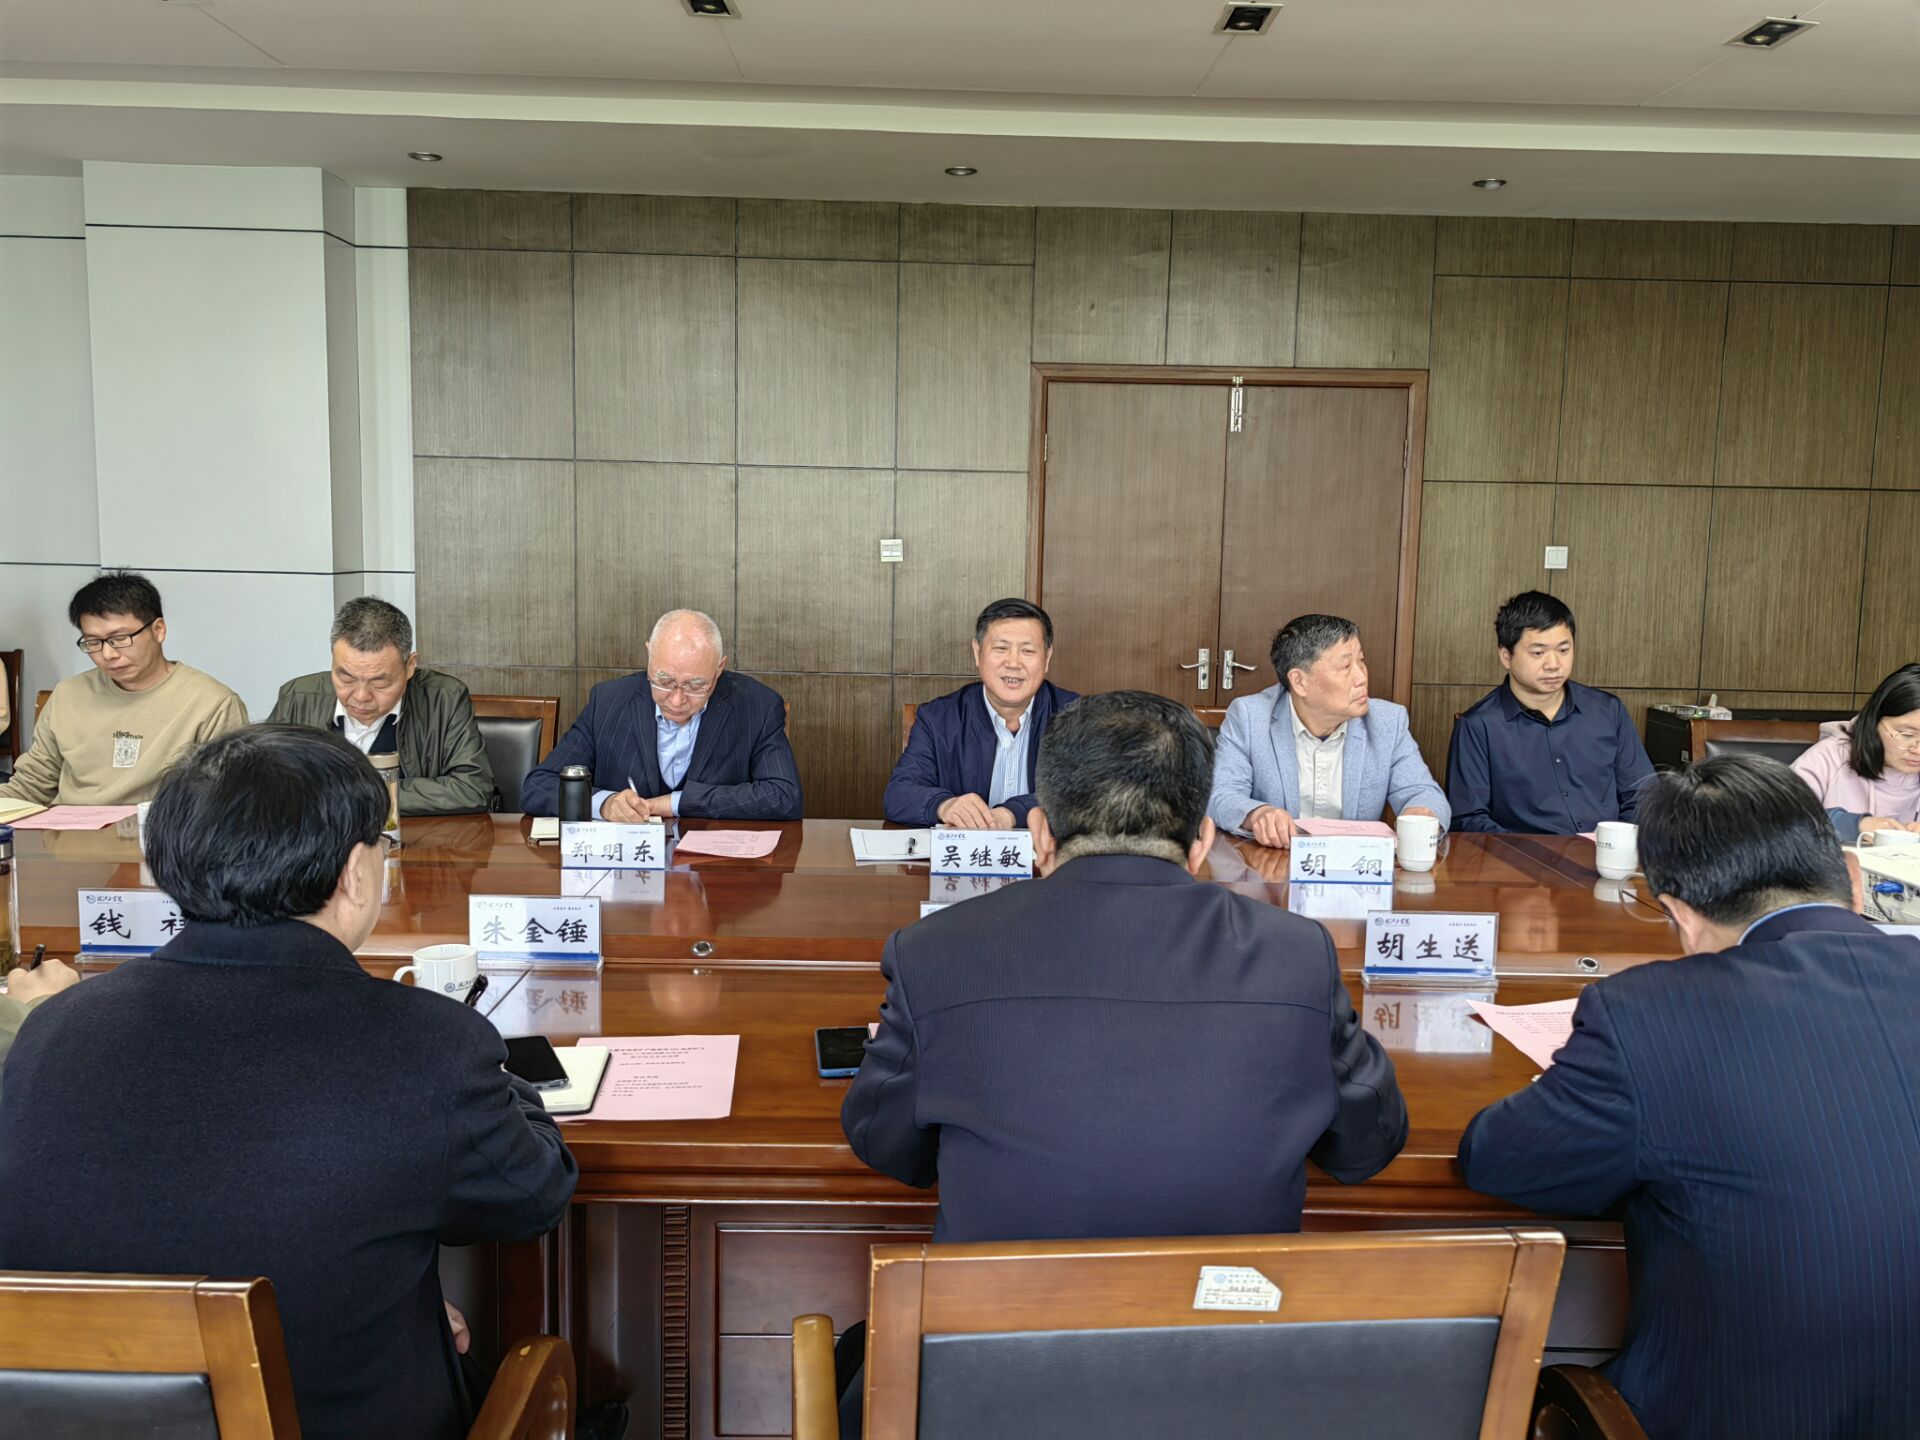 安徽省地质矿产勘查局322地质队与皖江工学院签订合作协议